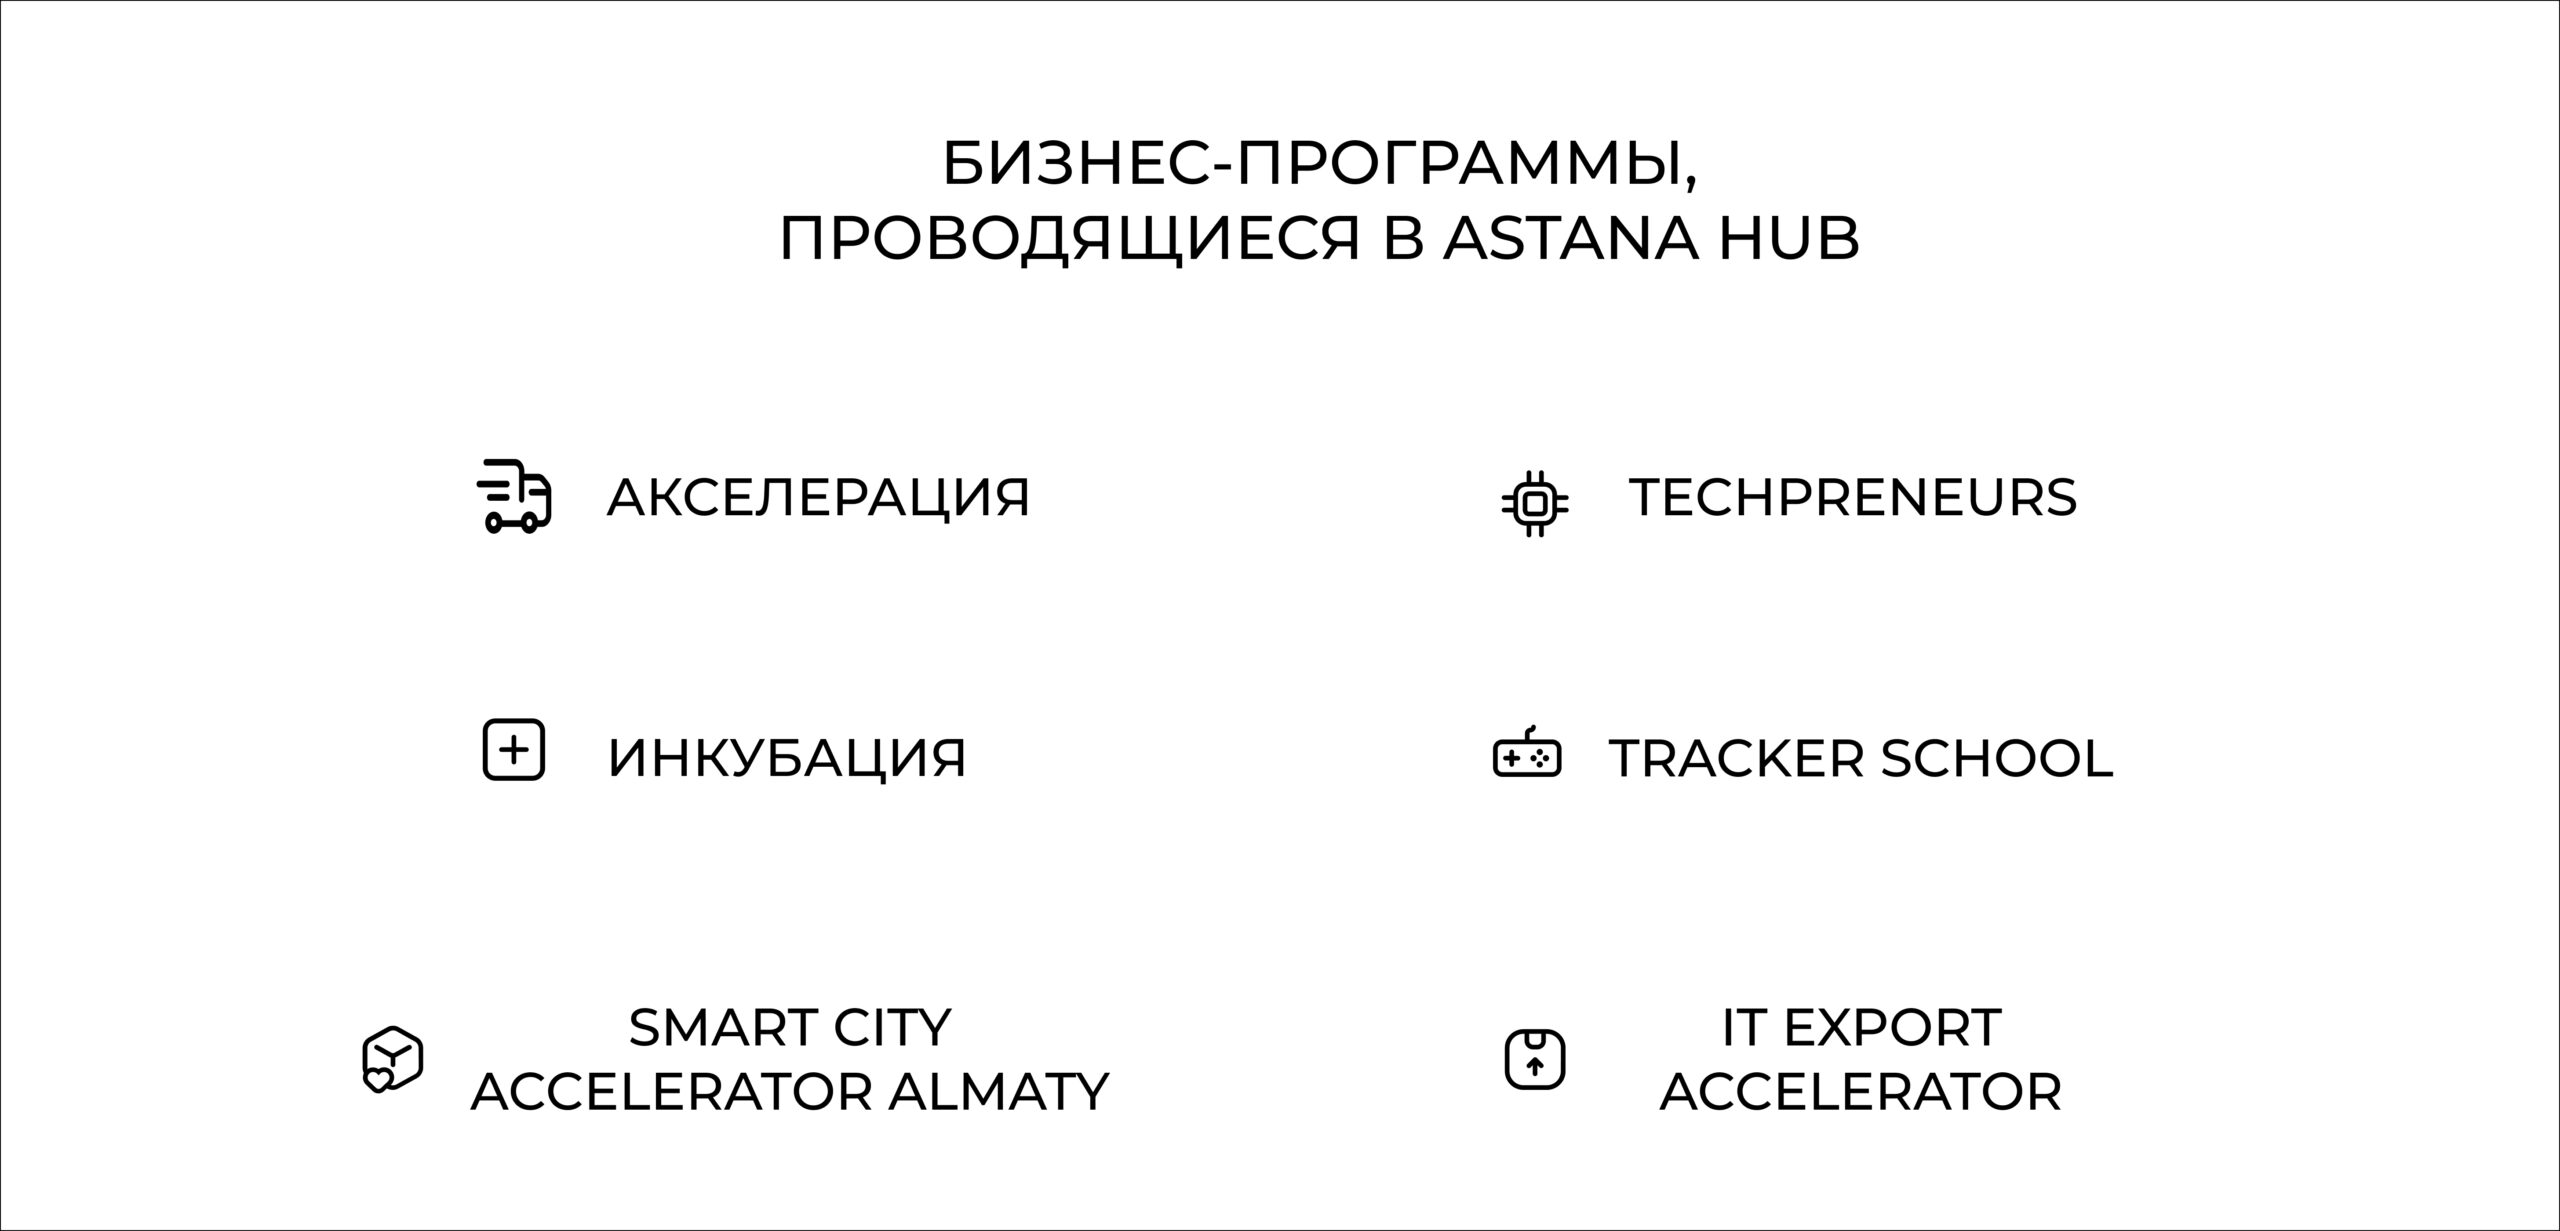 Бизнес-программы Астана Хаб